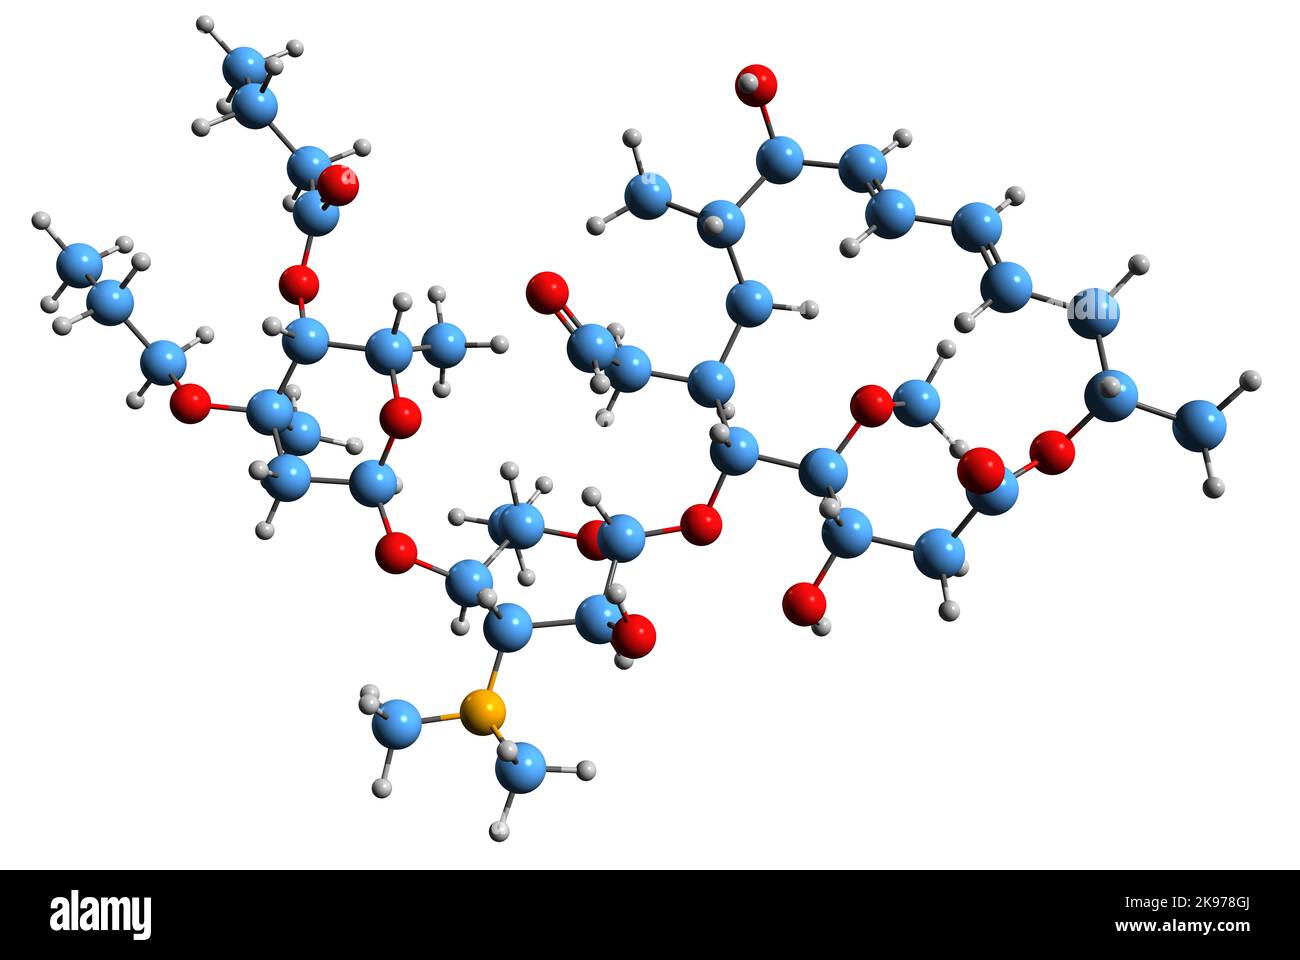 3D Bild der Skelettformel von Rokitamycin - molekulare chemische Struktur des Makrolid-Antibiotikums, isoliert auf weißem Hintergrund Stockfoto